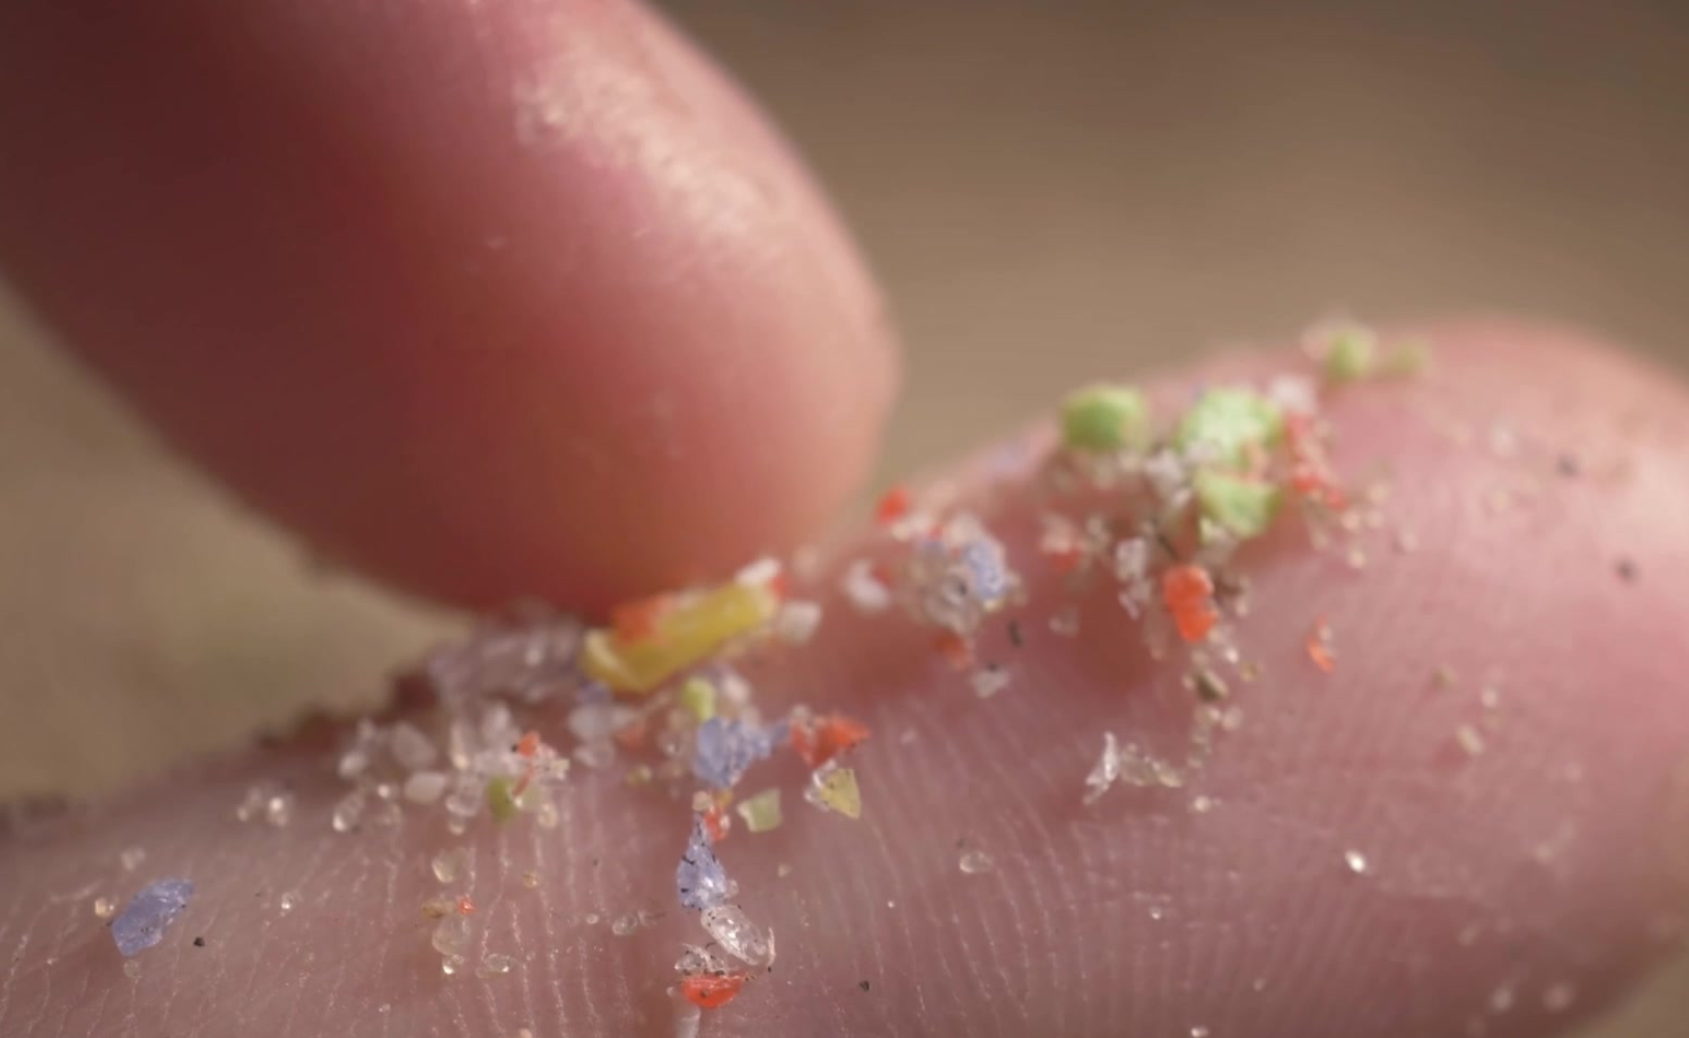 Image de micro plastiques colorés sur un doigt